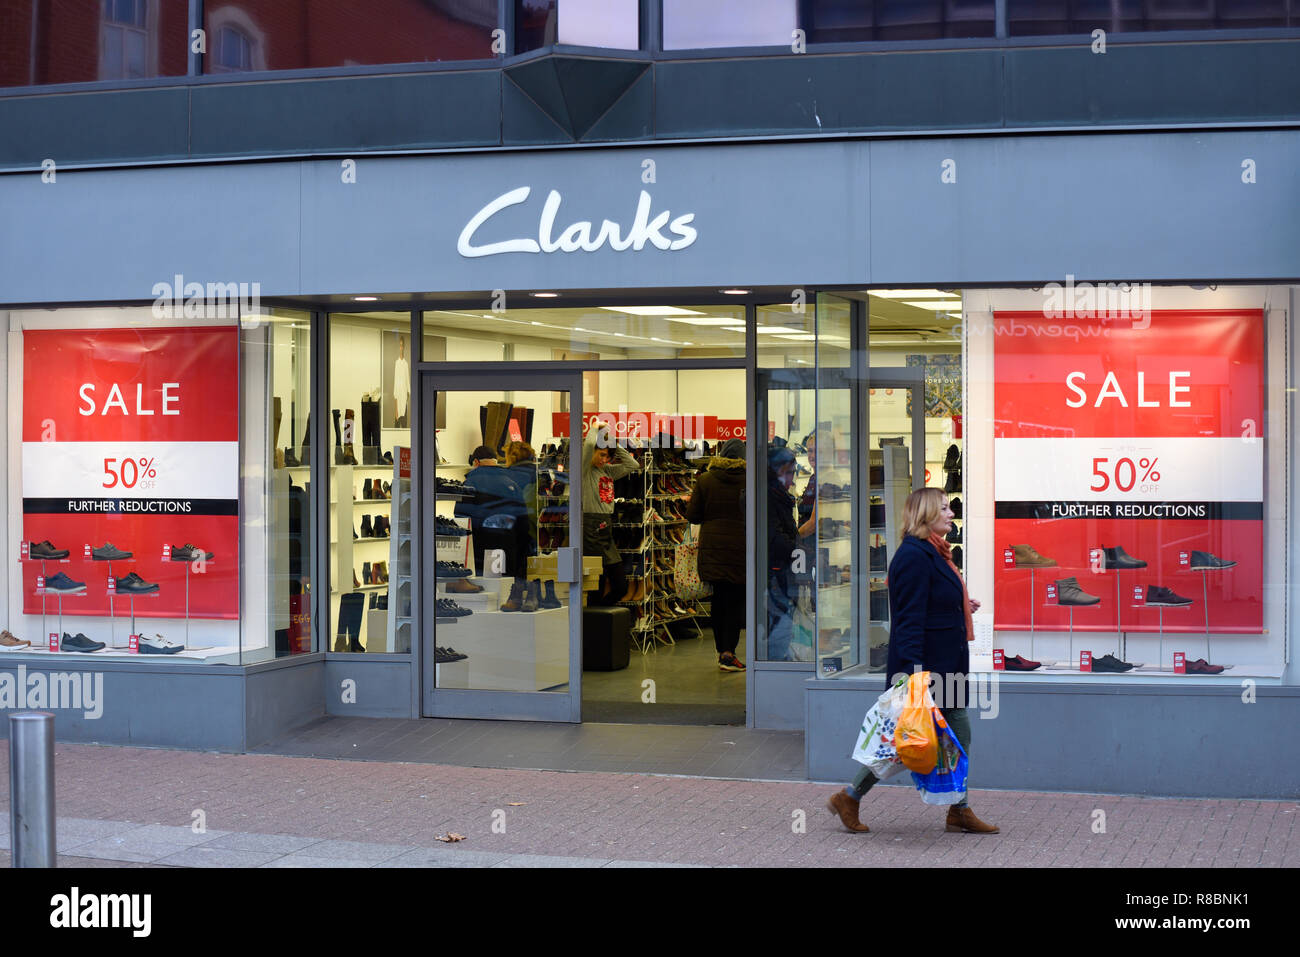 Tienda de Zapatos Clarks tienda en High Street, Southend on Sea, Essex, Reino Unido, con carteles de "Se vende" la ventana de la 50% la venta a mitad